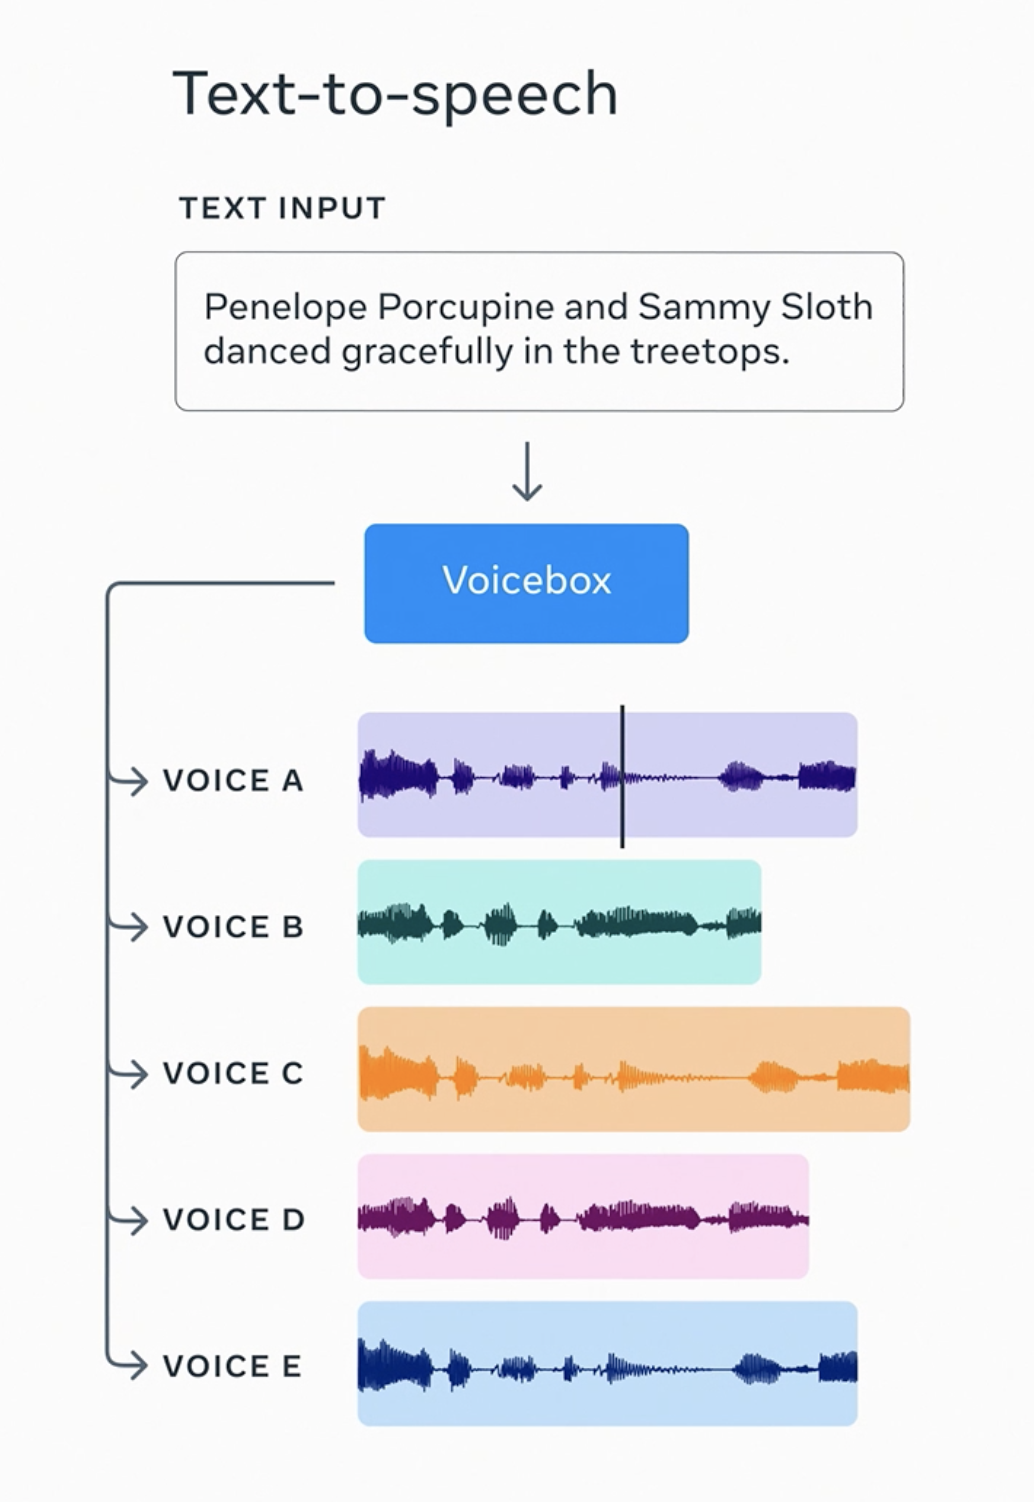 Meta 推出全能语音生成 AI 模型 Voicebox 支持六种语言和多种语音处理功能 | 梭哈 AI